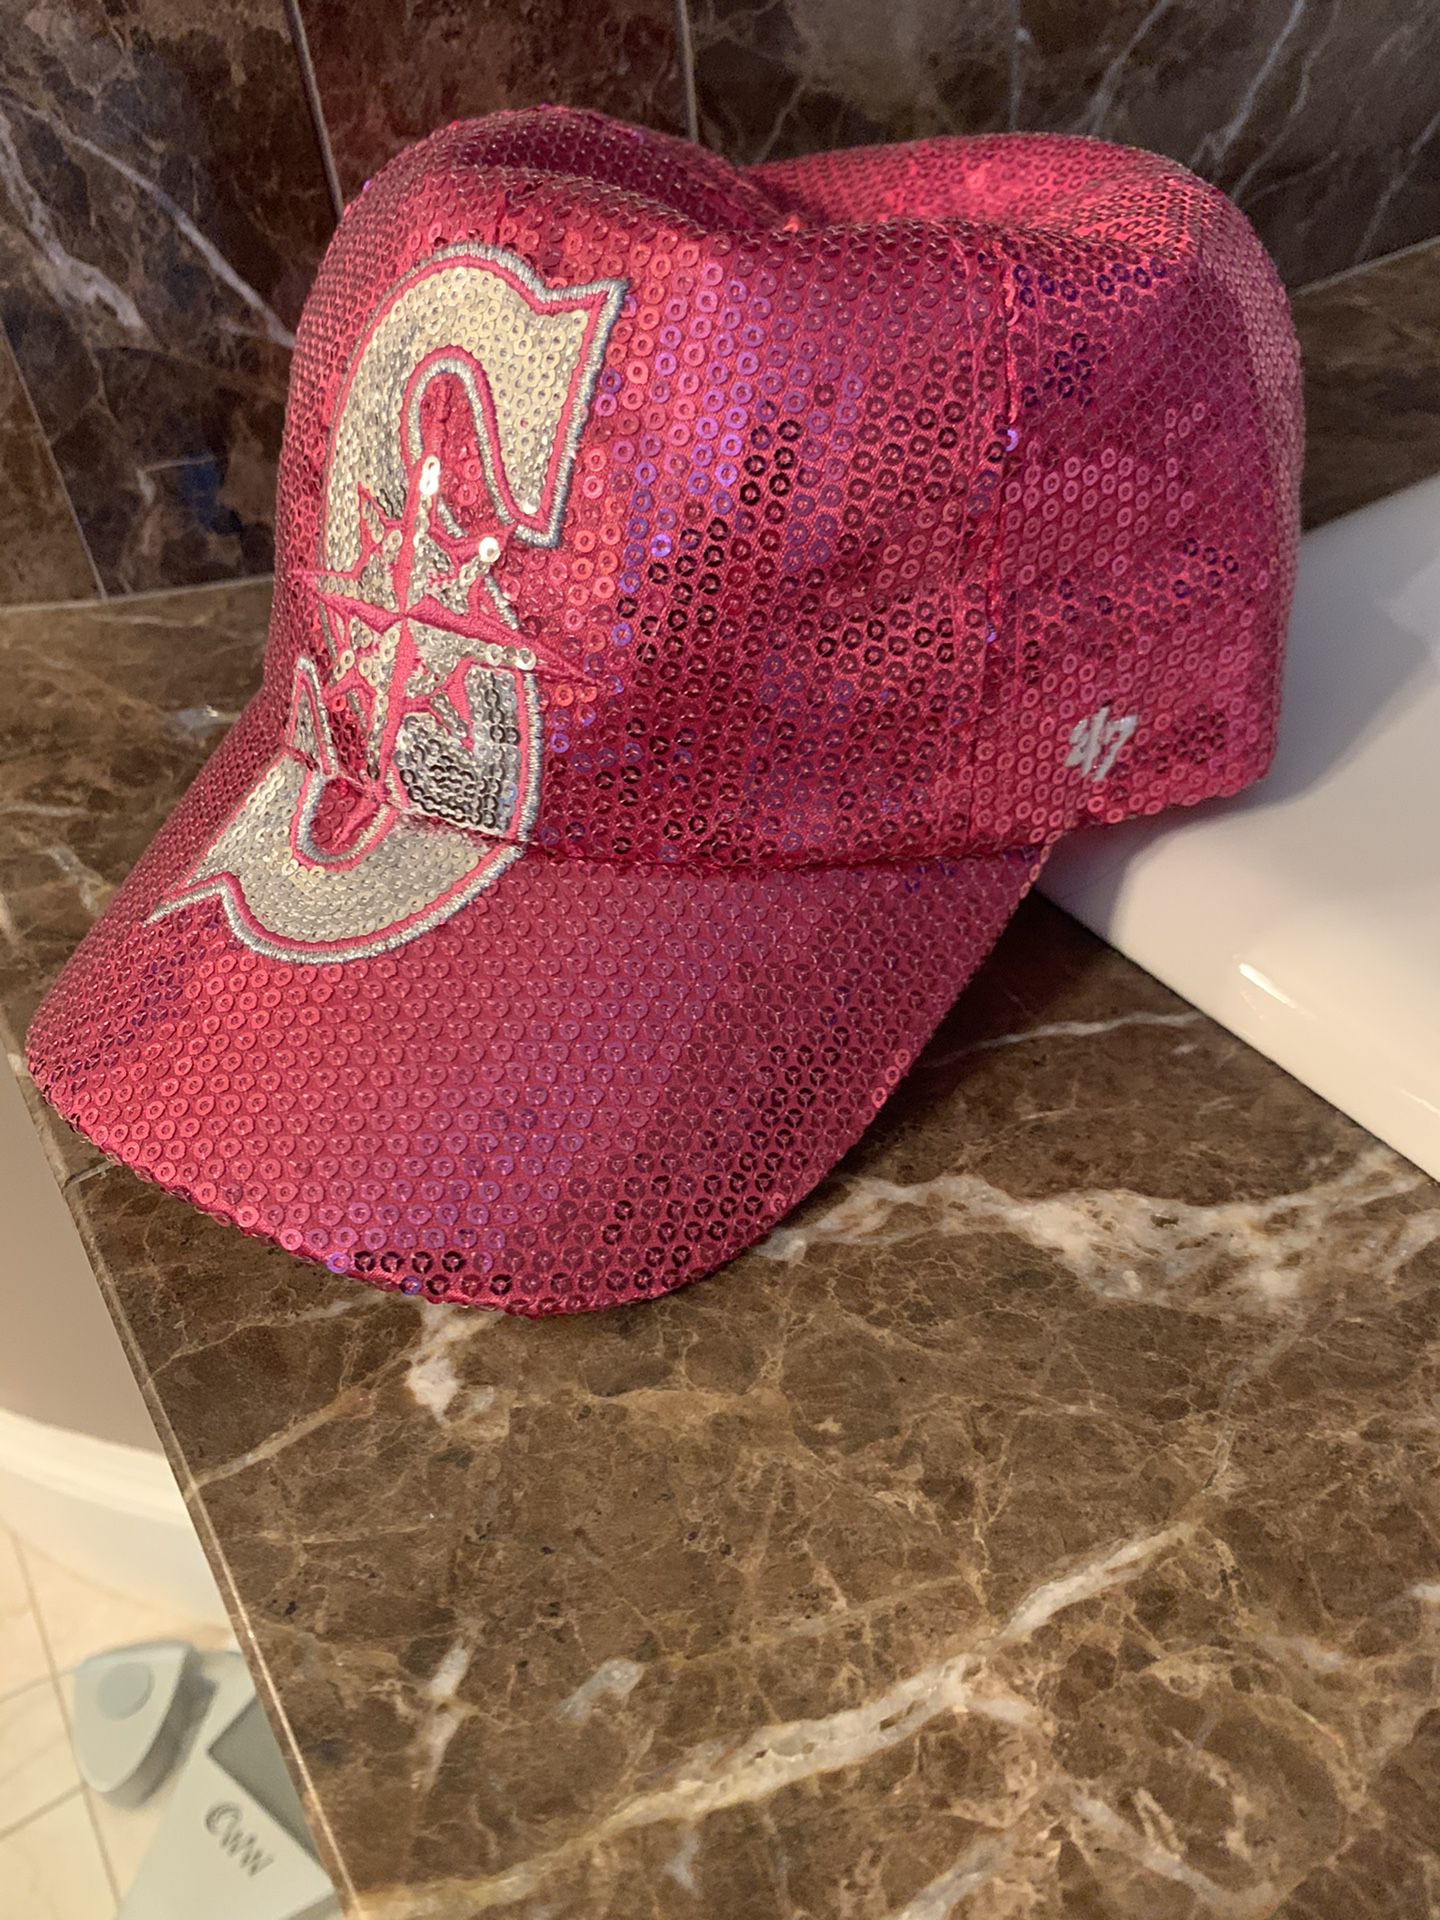 Mariner’s pink sequin hat